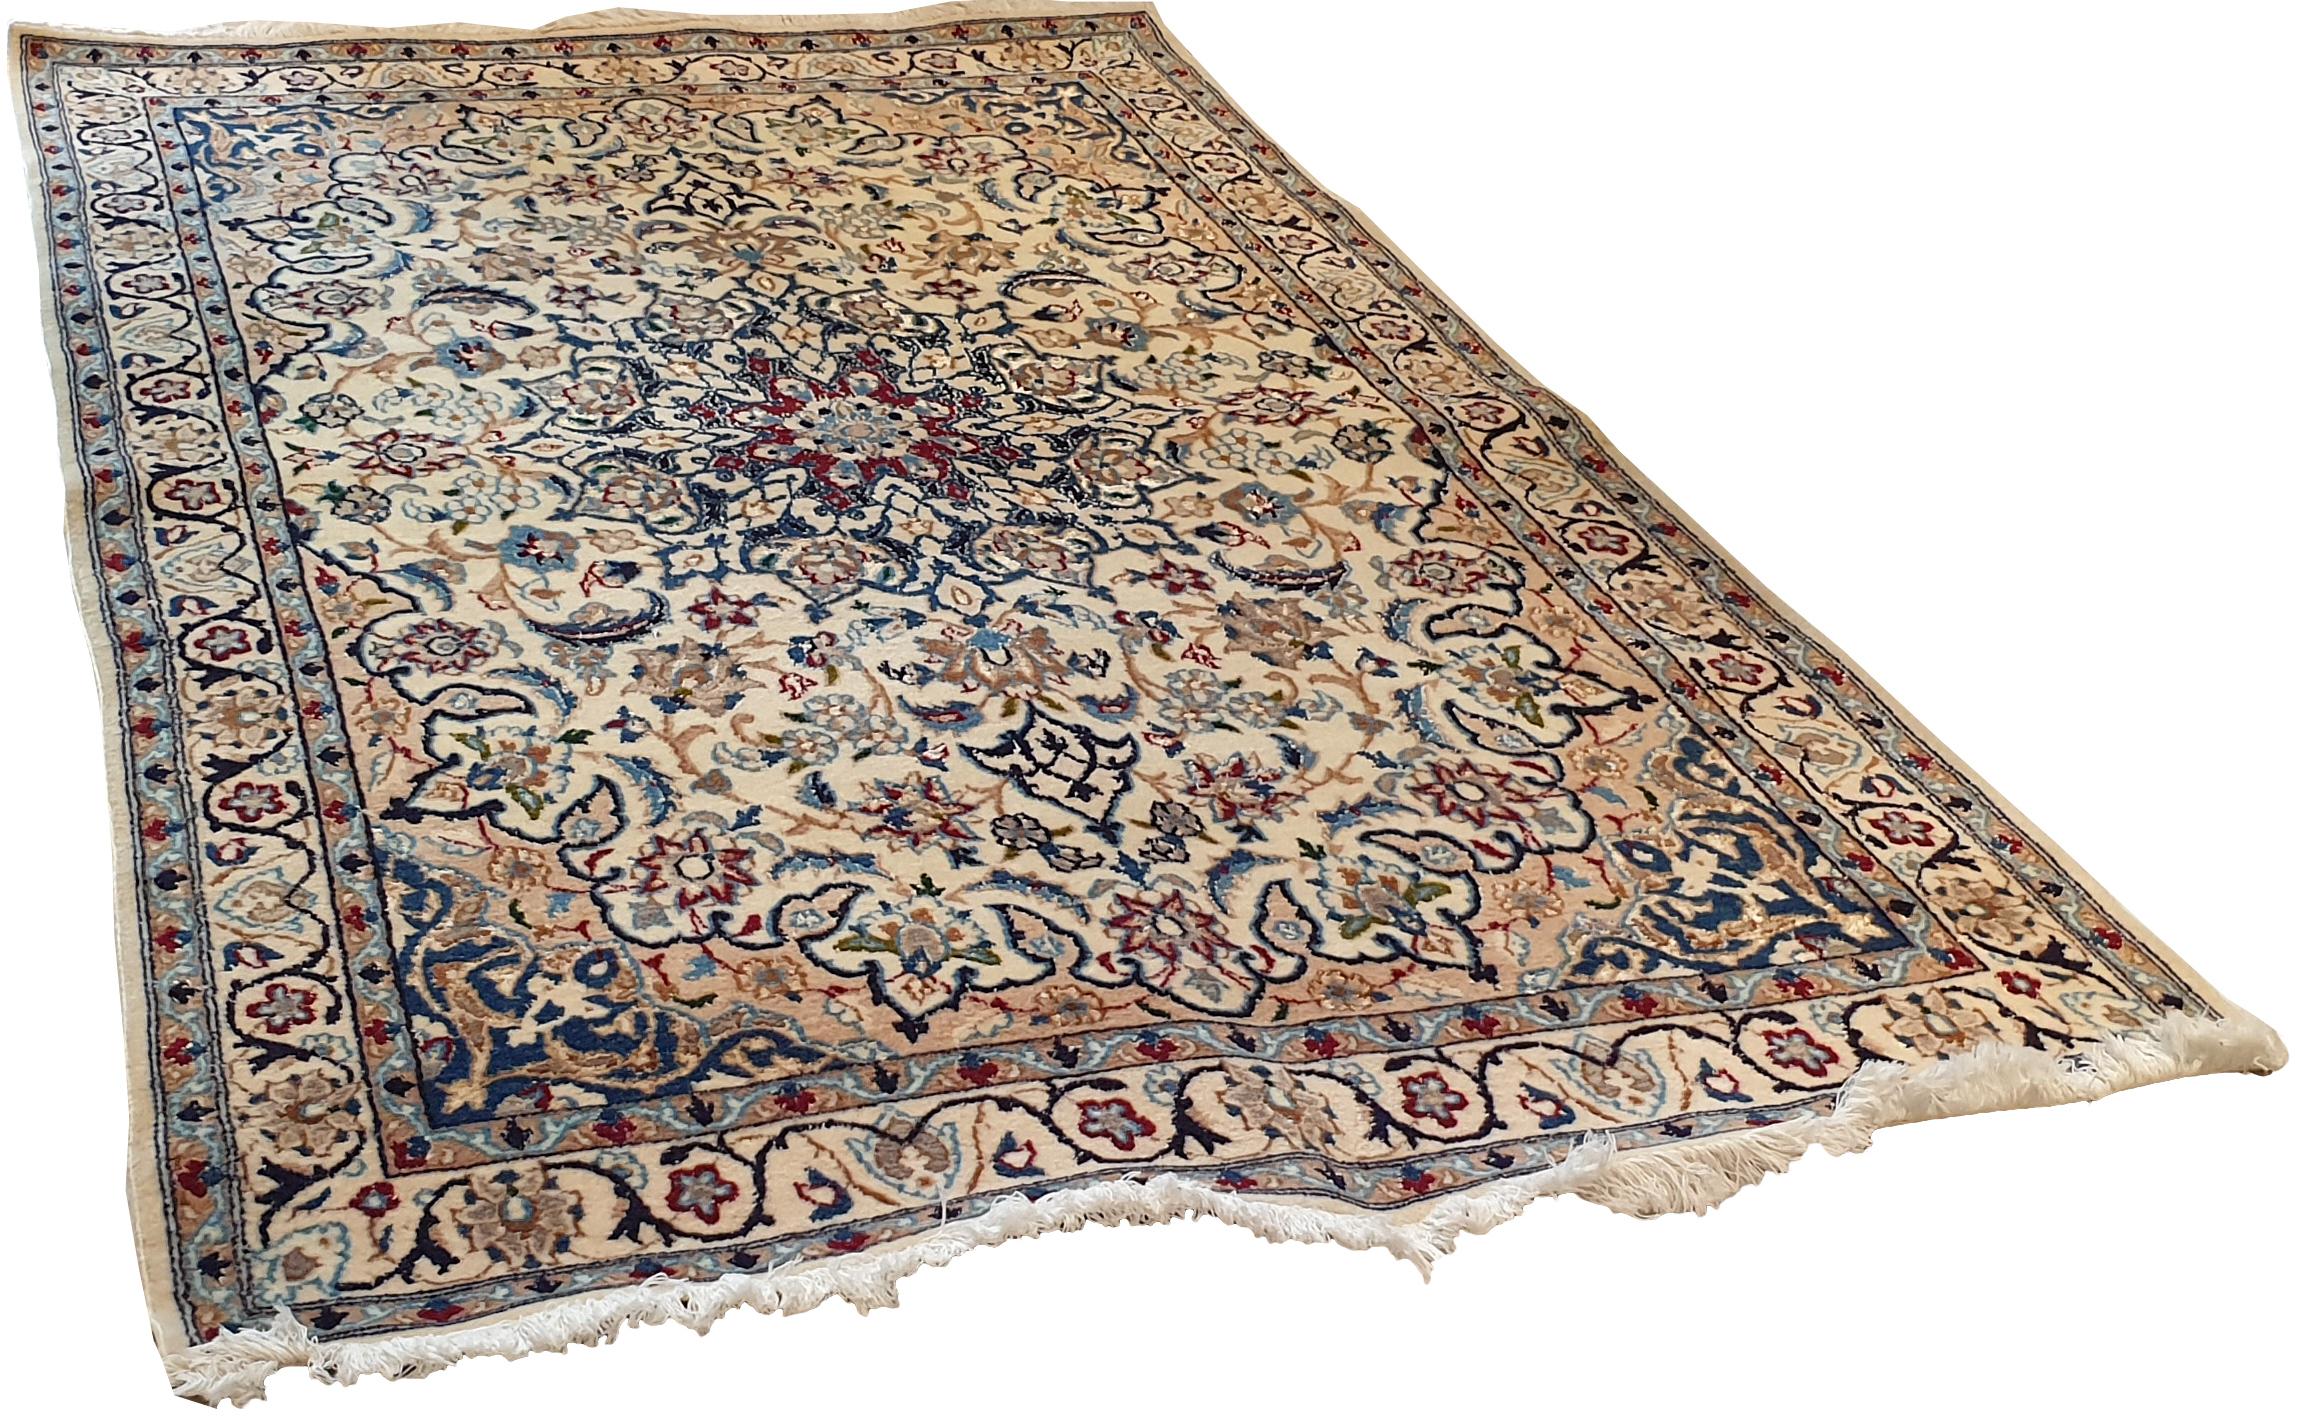 838 - Schöner Teppich aus dem 20. Jahrhundert mit hübschem Blumenmuster und einem fein handgeknüpften zentralen Medaillon aus Wolle und Seidensamt auf Baumwollgrund.